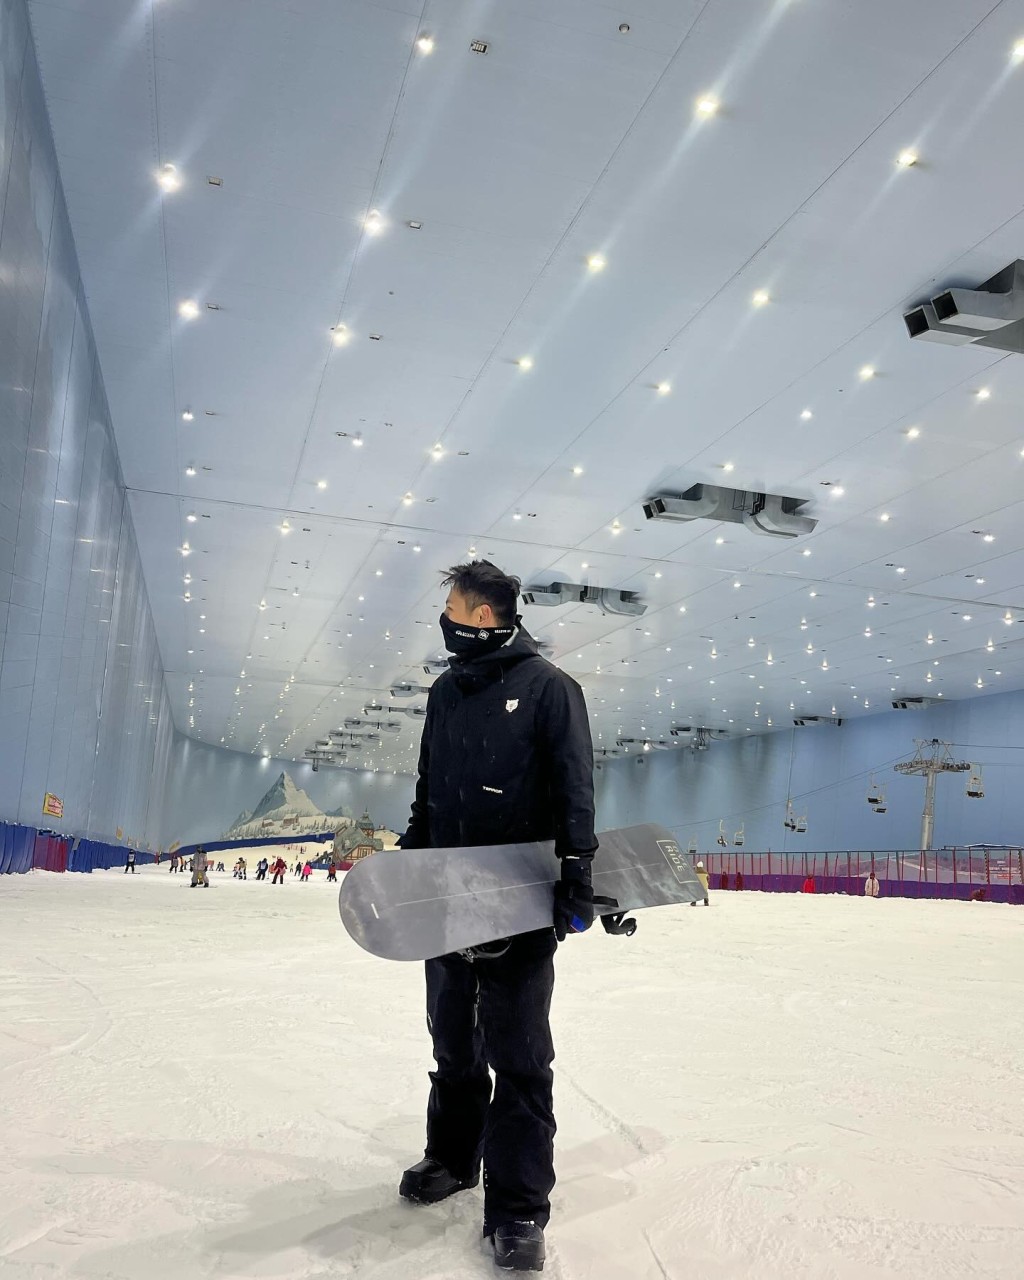 细佬David亦于社交网贴出滑雪初体验照。